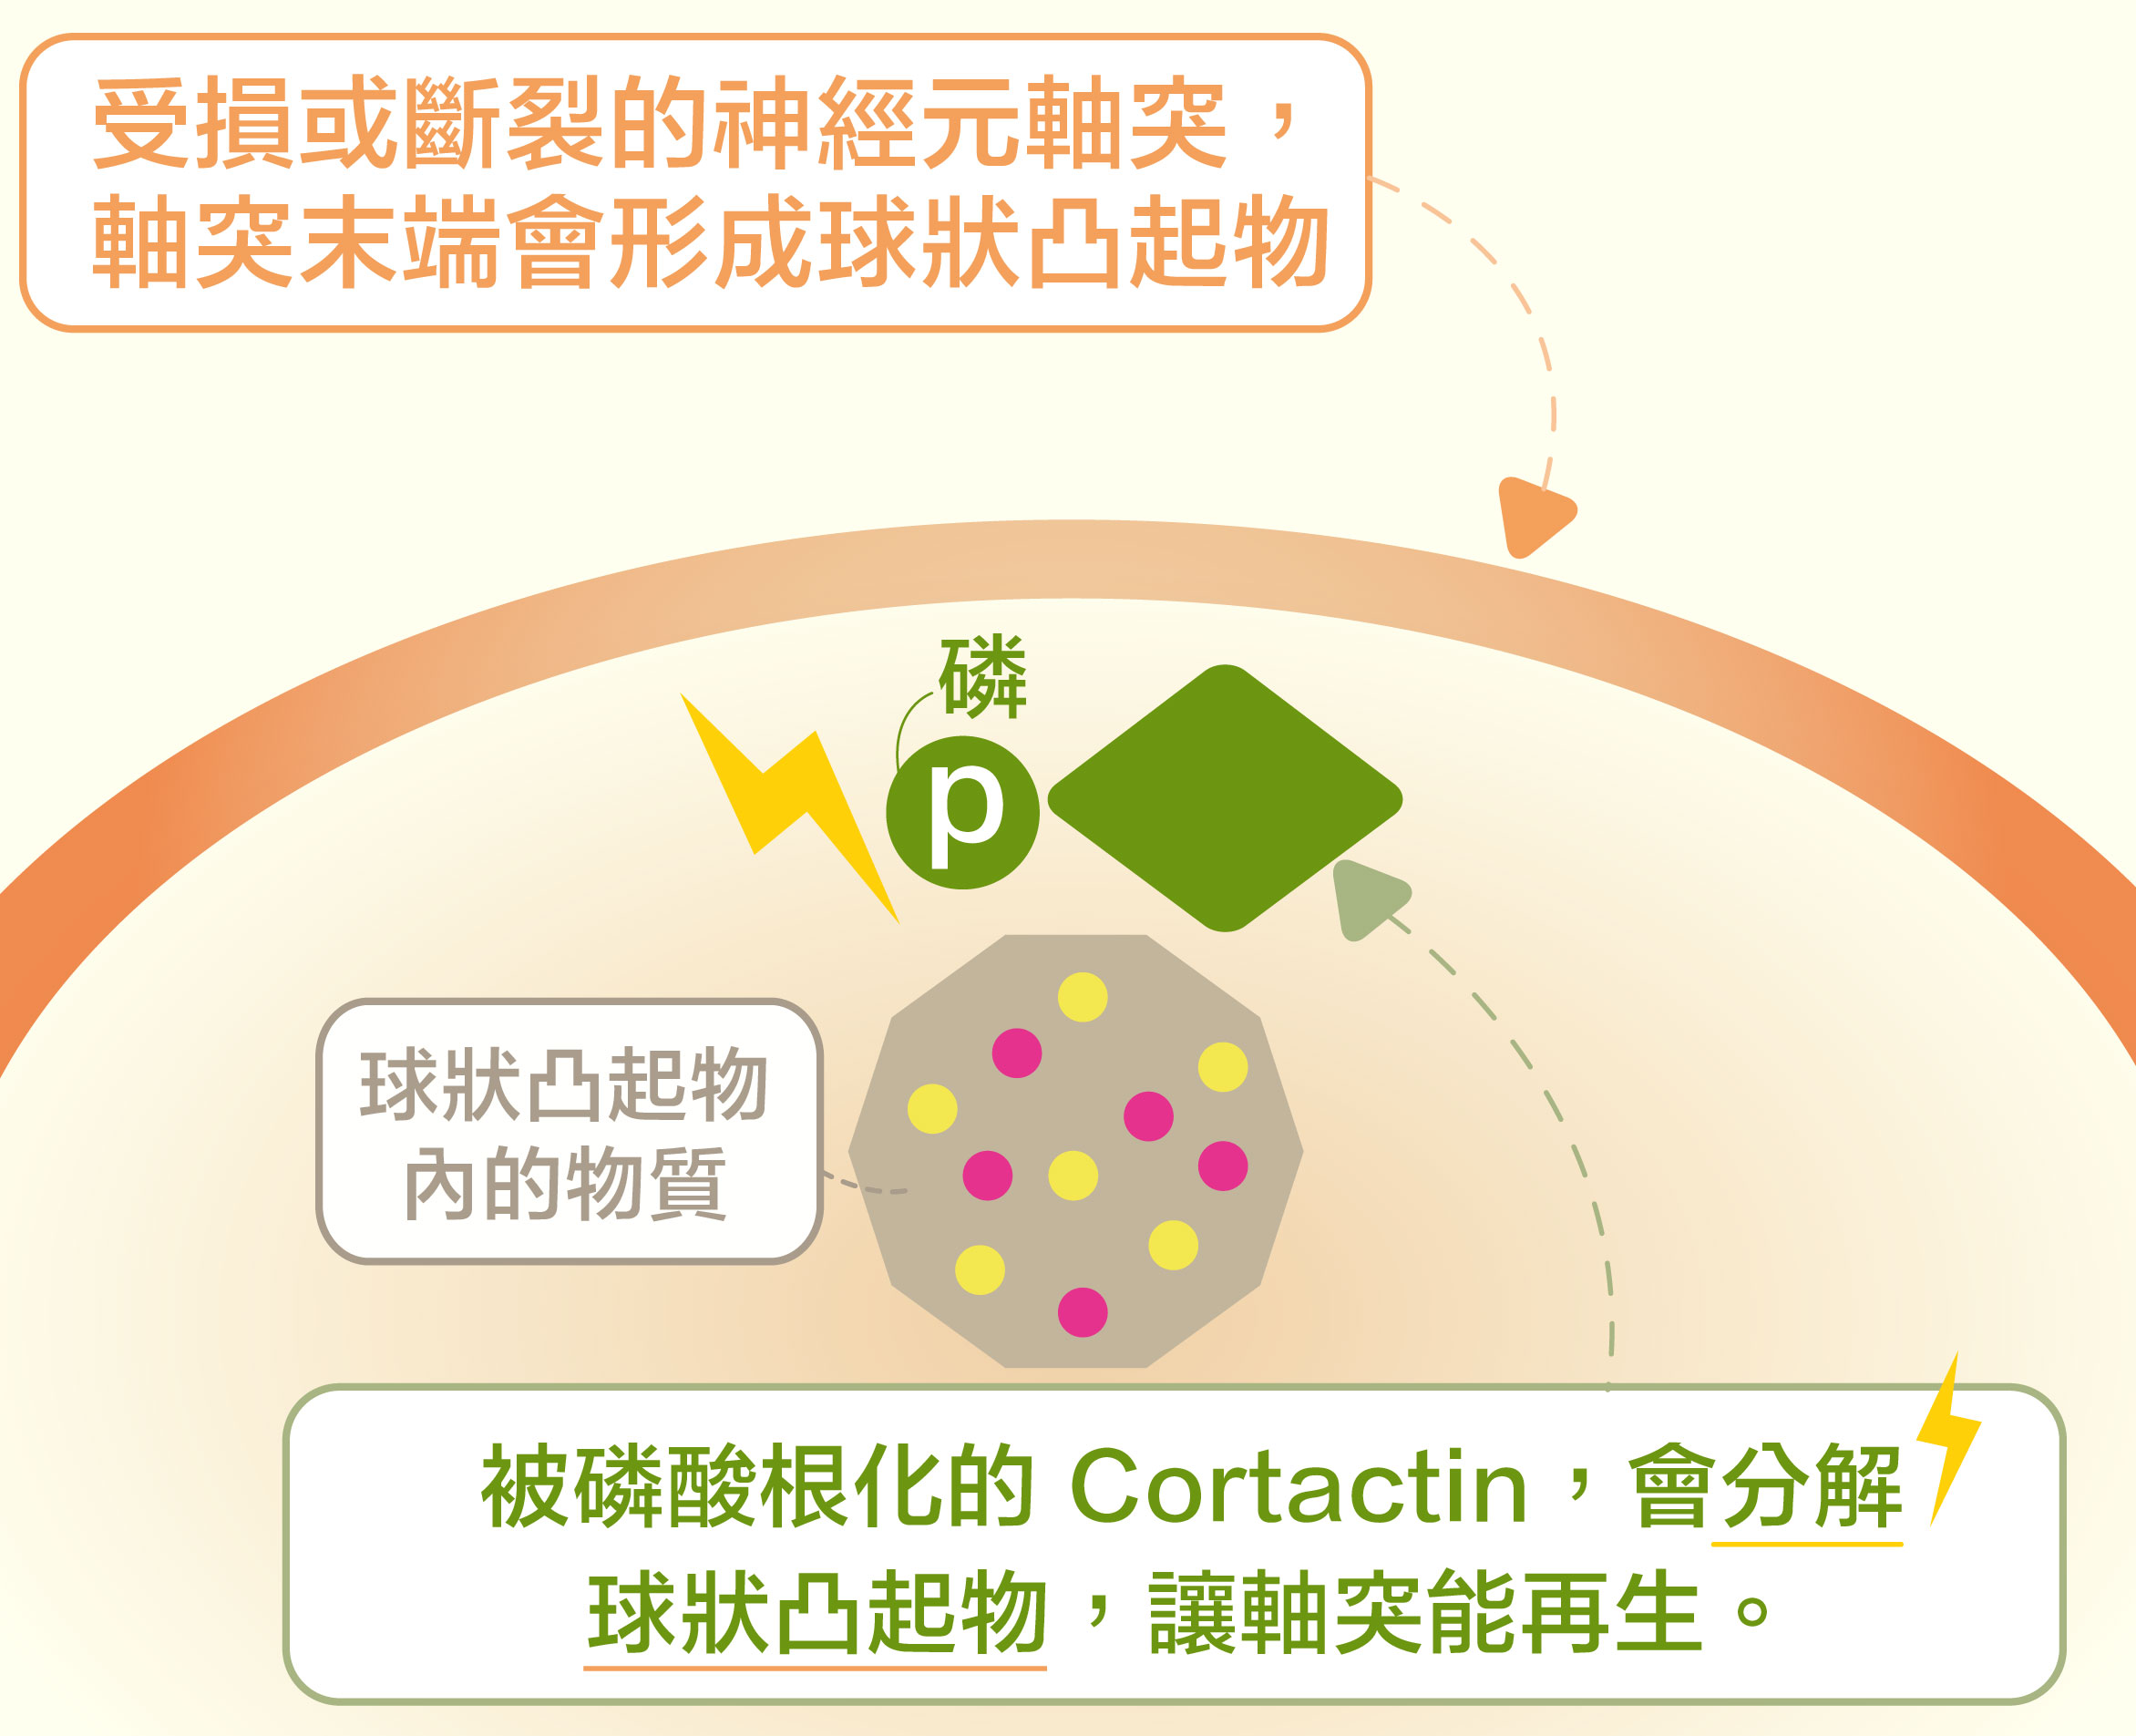 當 Cortactin 被磷酸根化，就會促使軸突末端的球狀凸起物分解，讓斷裂的軸突可以重新生長。資料來源│洪上程圖說重製｜黃曉君、林洵安